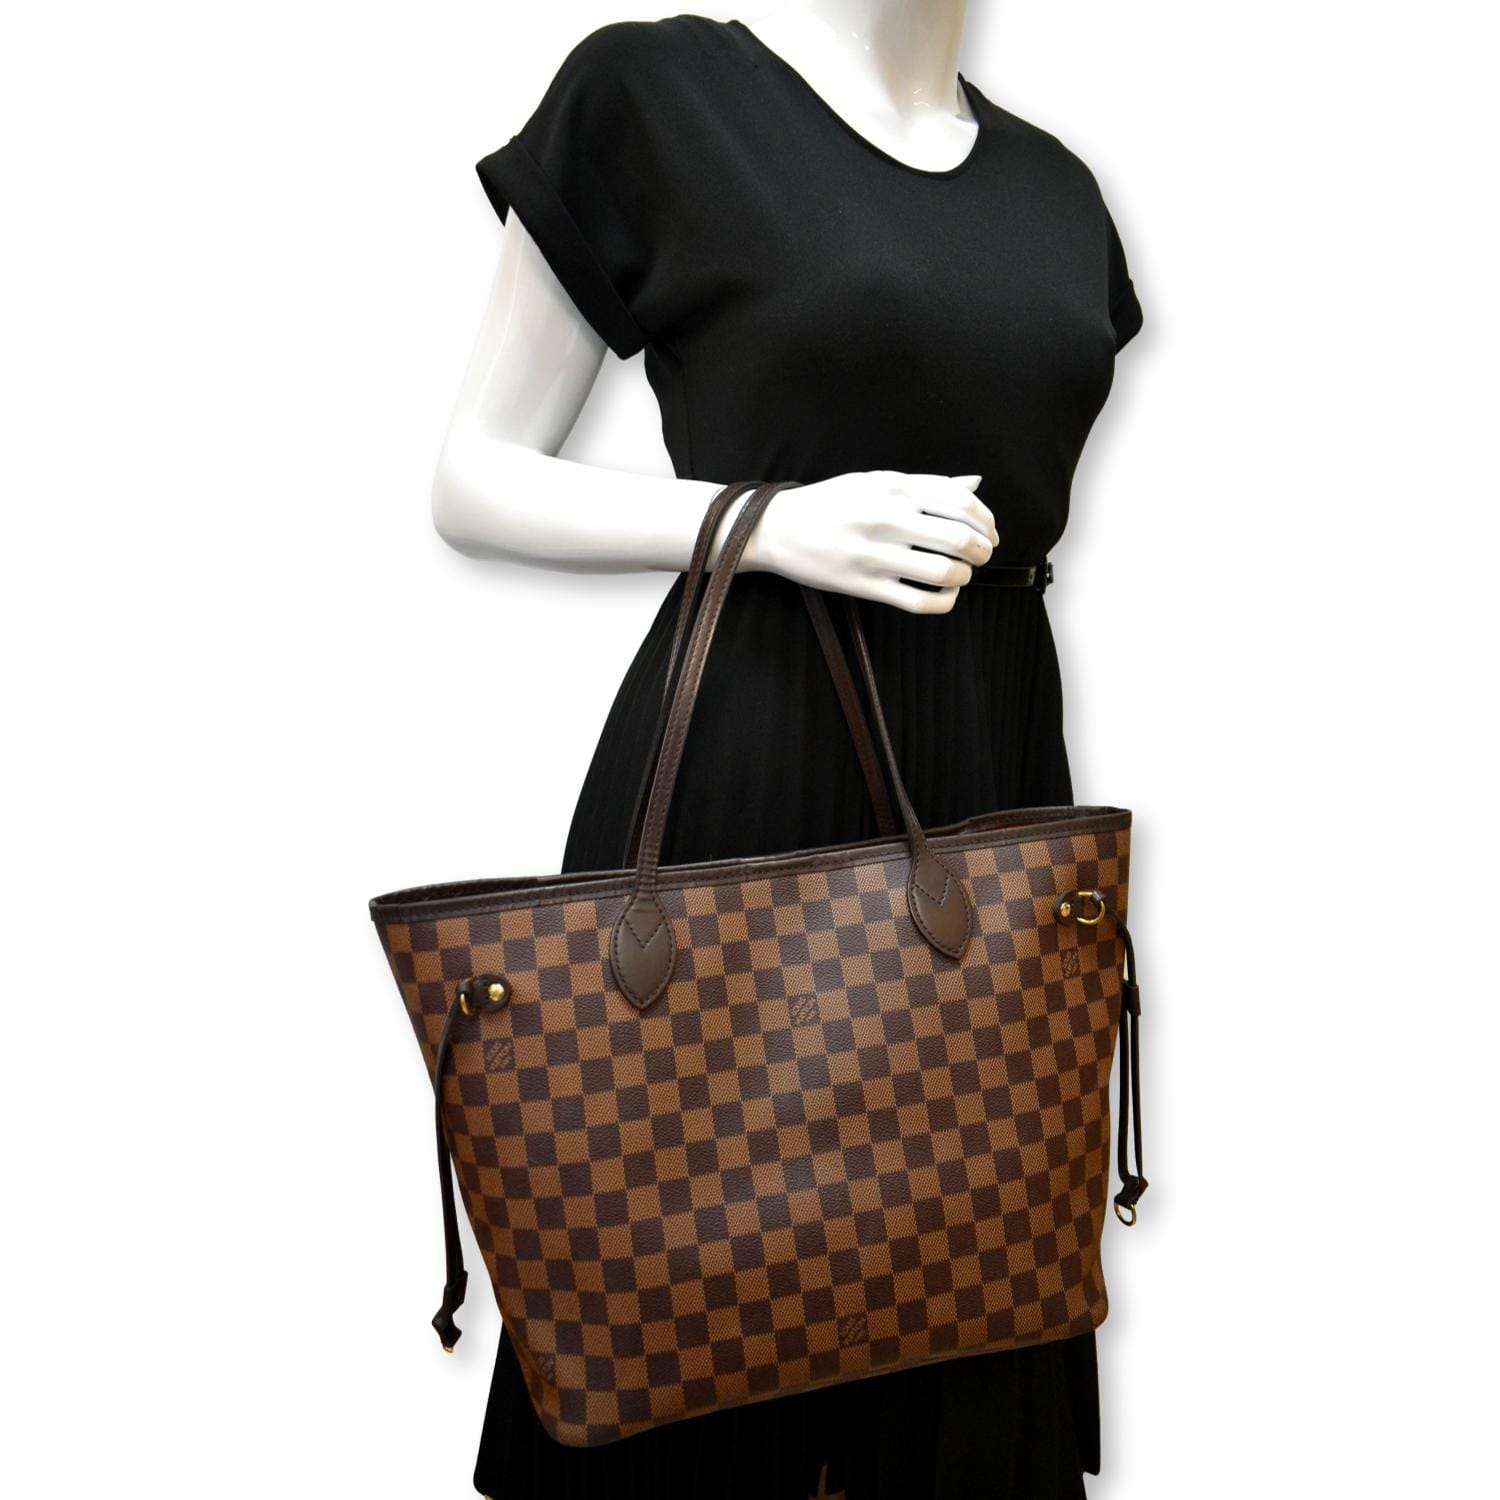 Louis Vuitton Neverfull MM Handbag